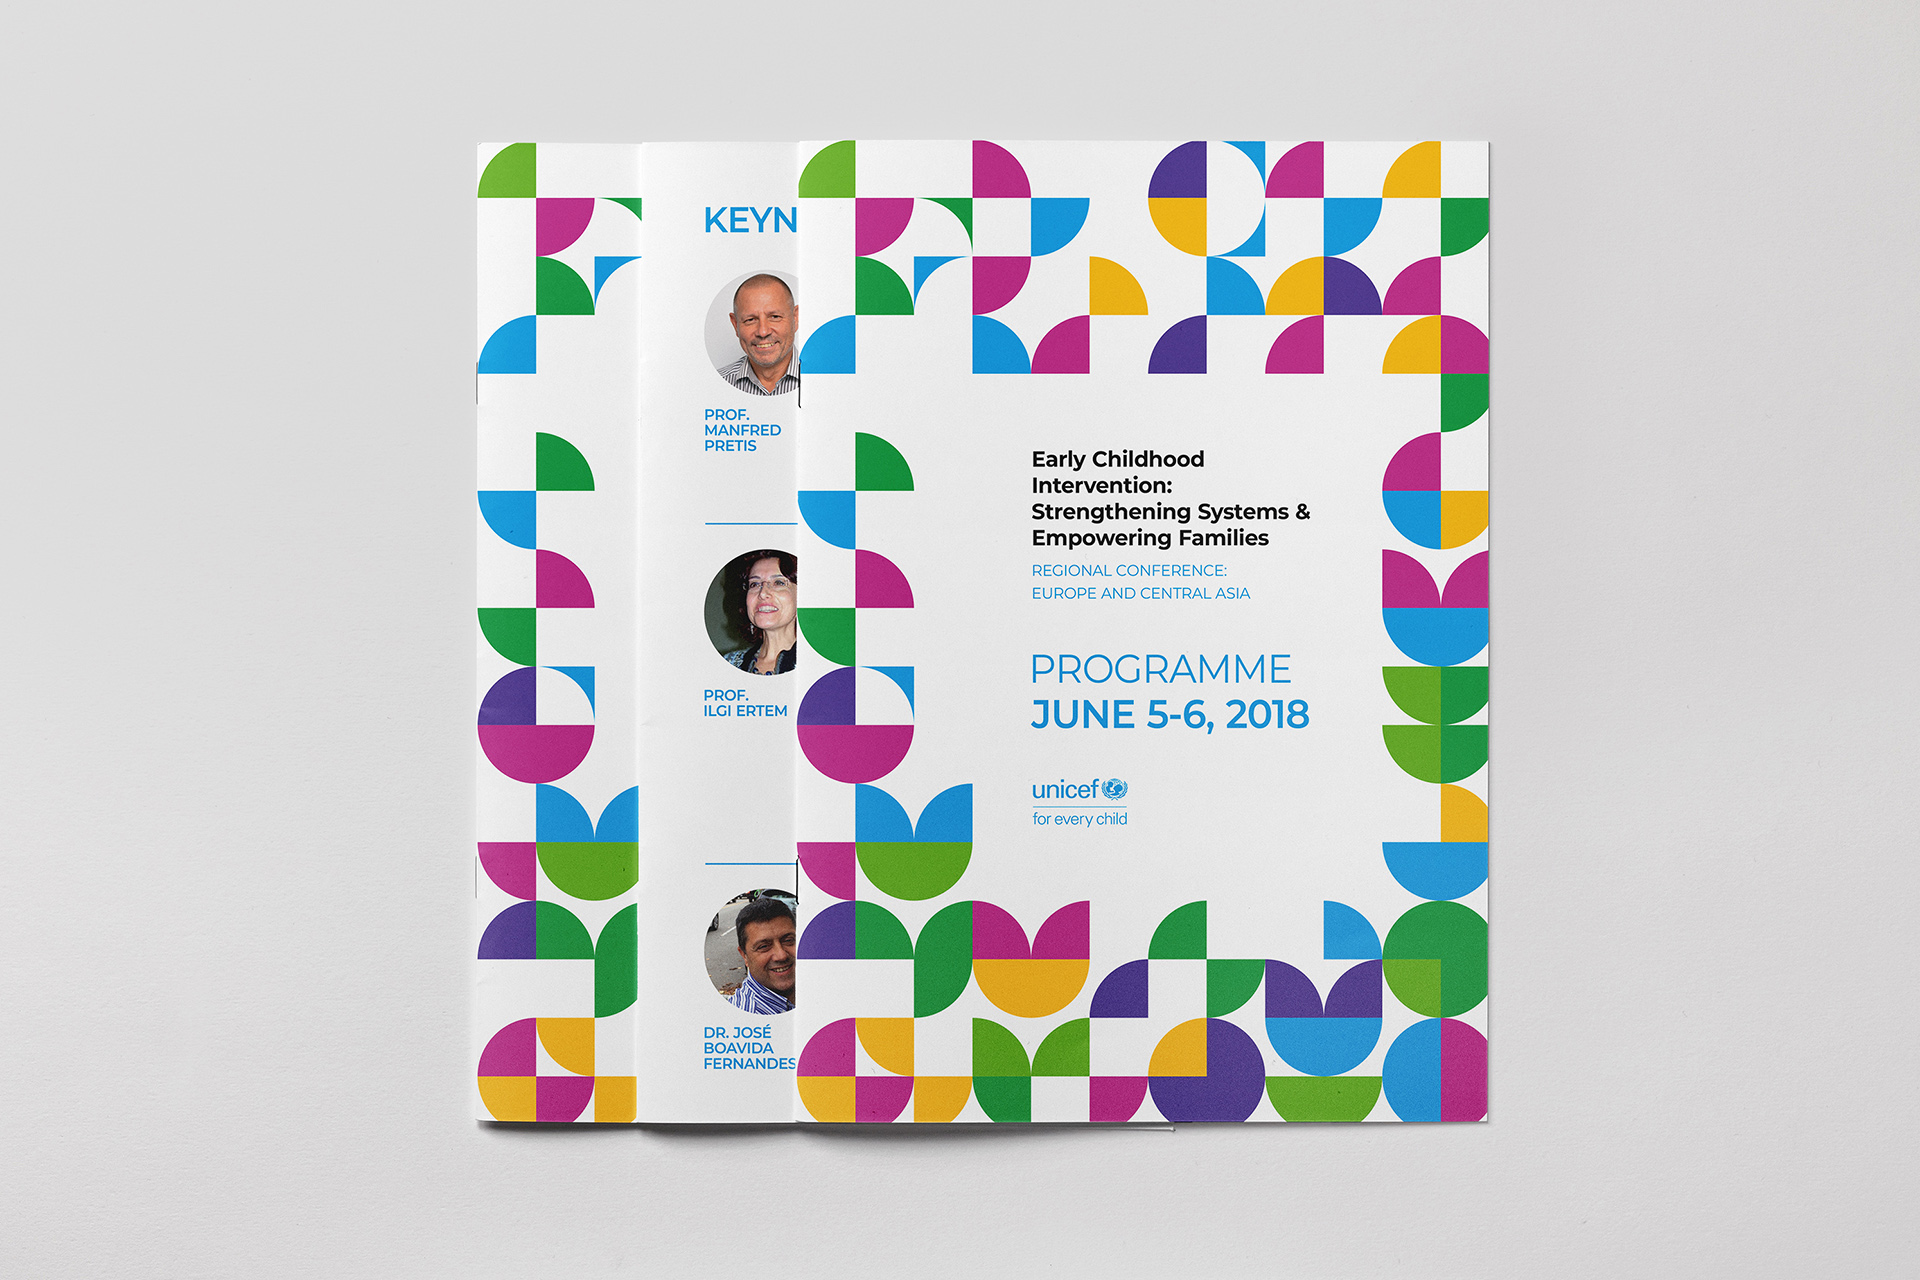 Дизайн брошюры с программой конференции